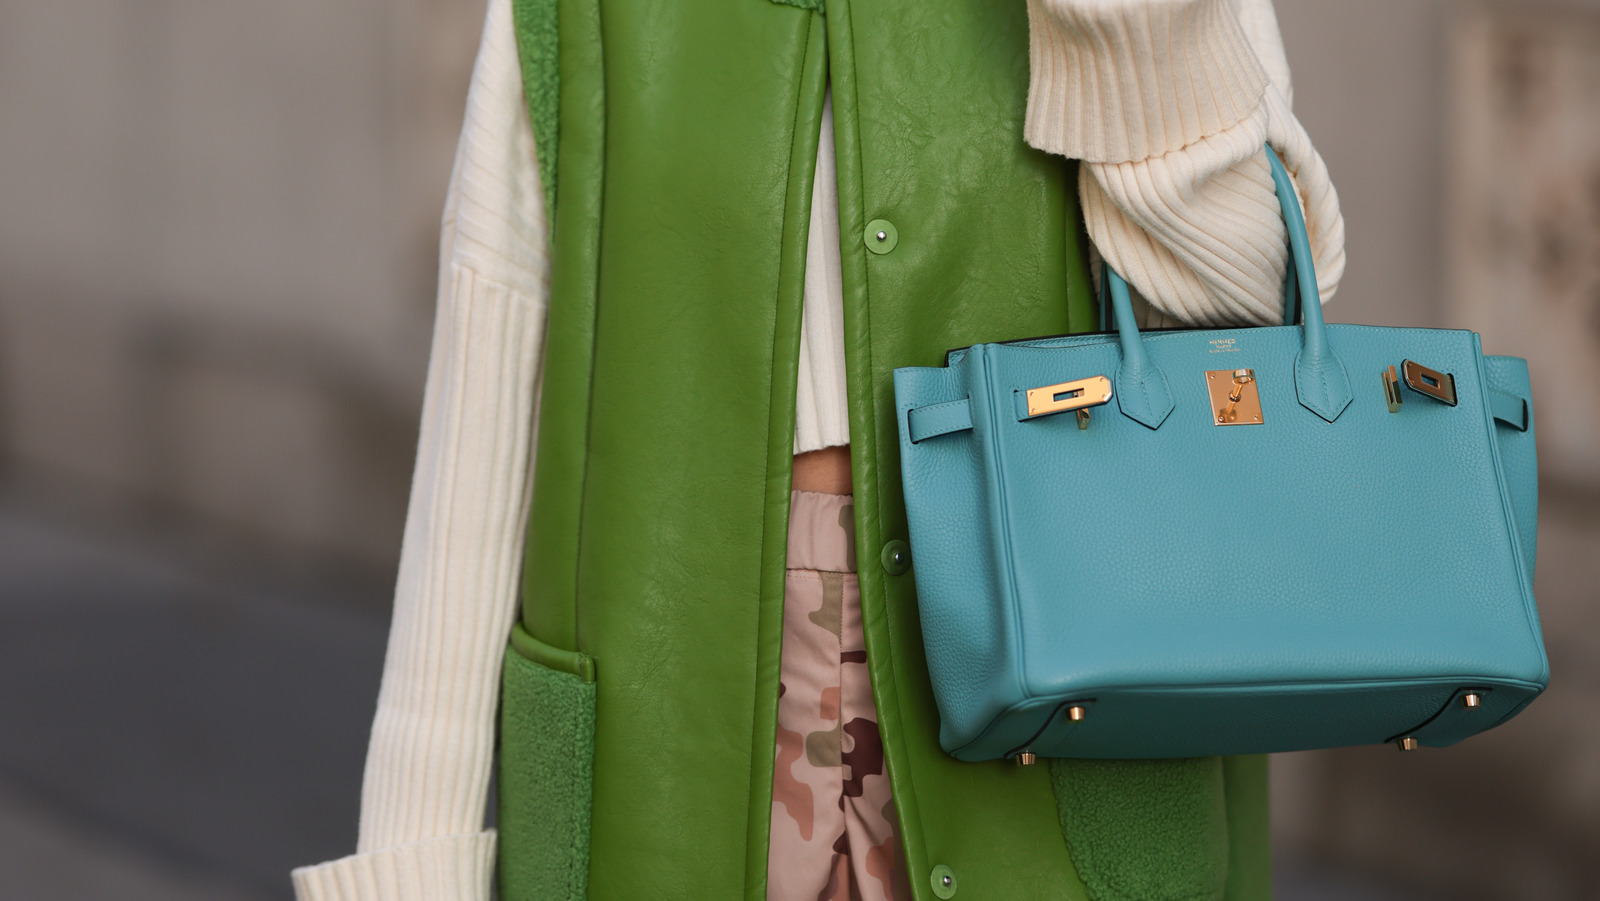 How to Purchase an Hermès Birkin Bag – WWD